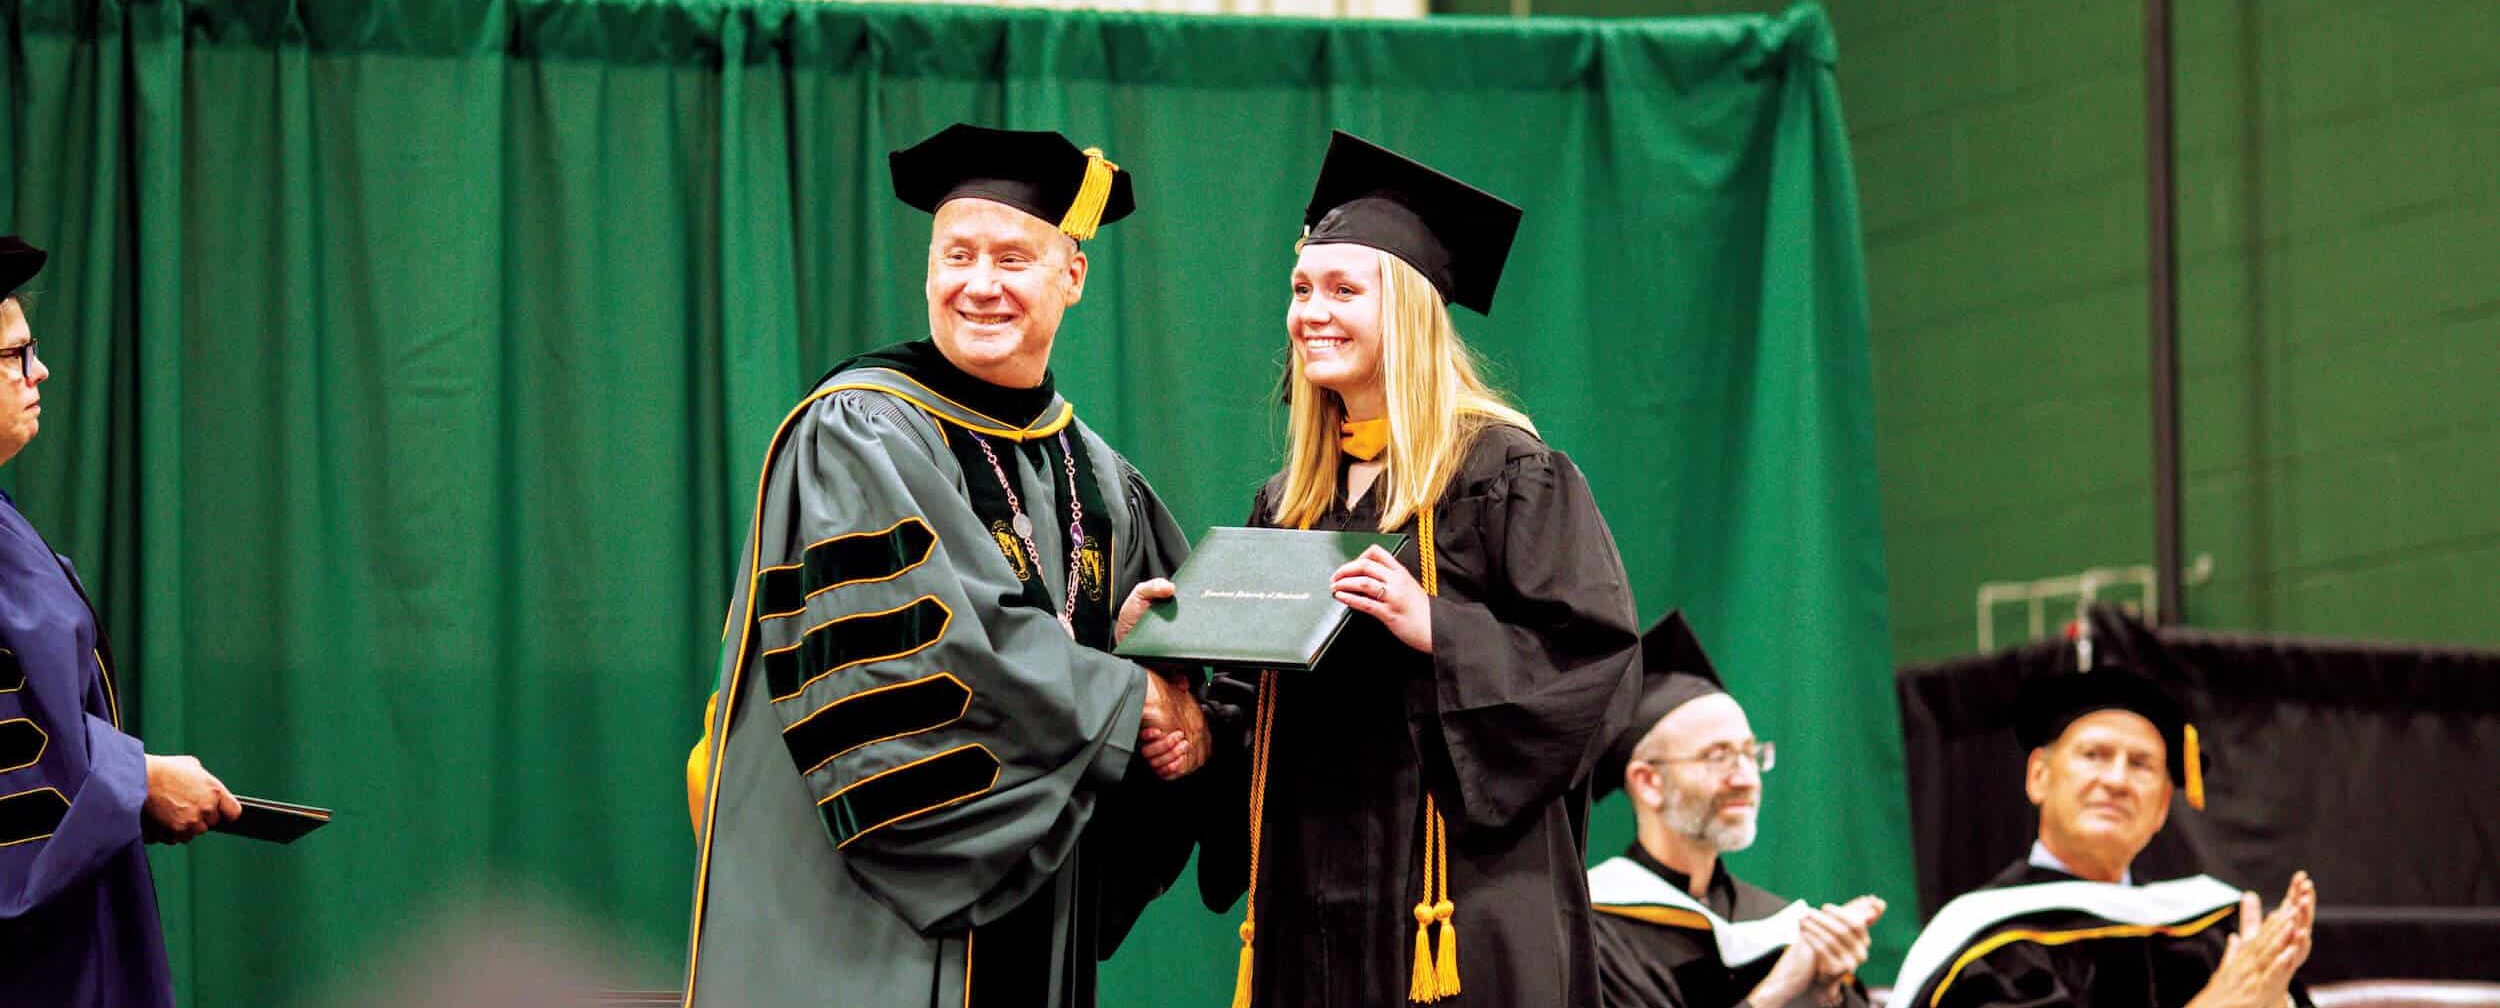 Michaela Miller receives her diploma from Fr. Dave Pivonka, TOR ’89.